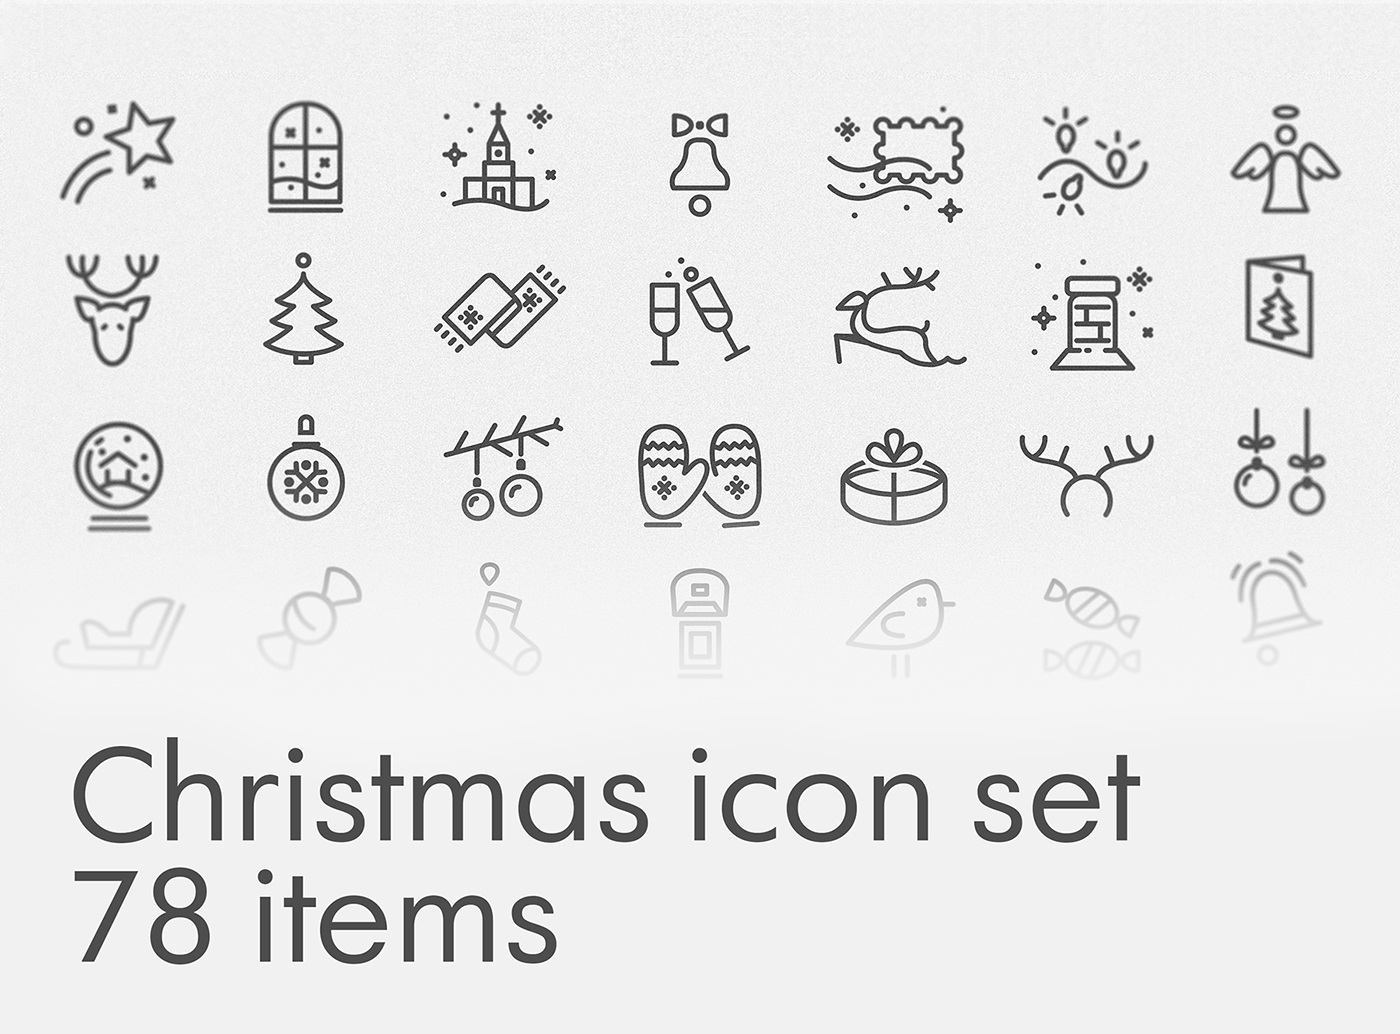 Free Christmas icon set